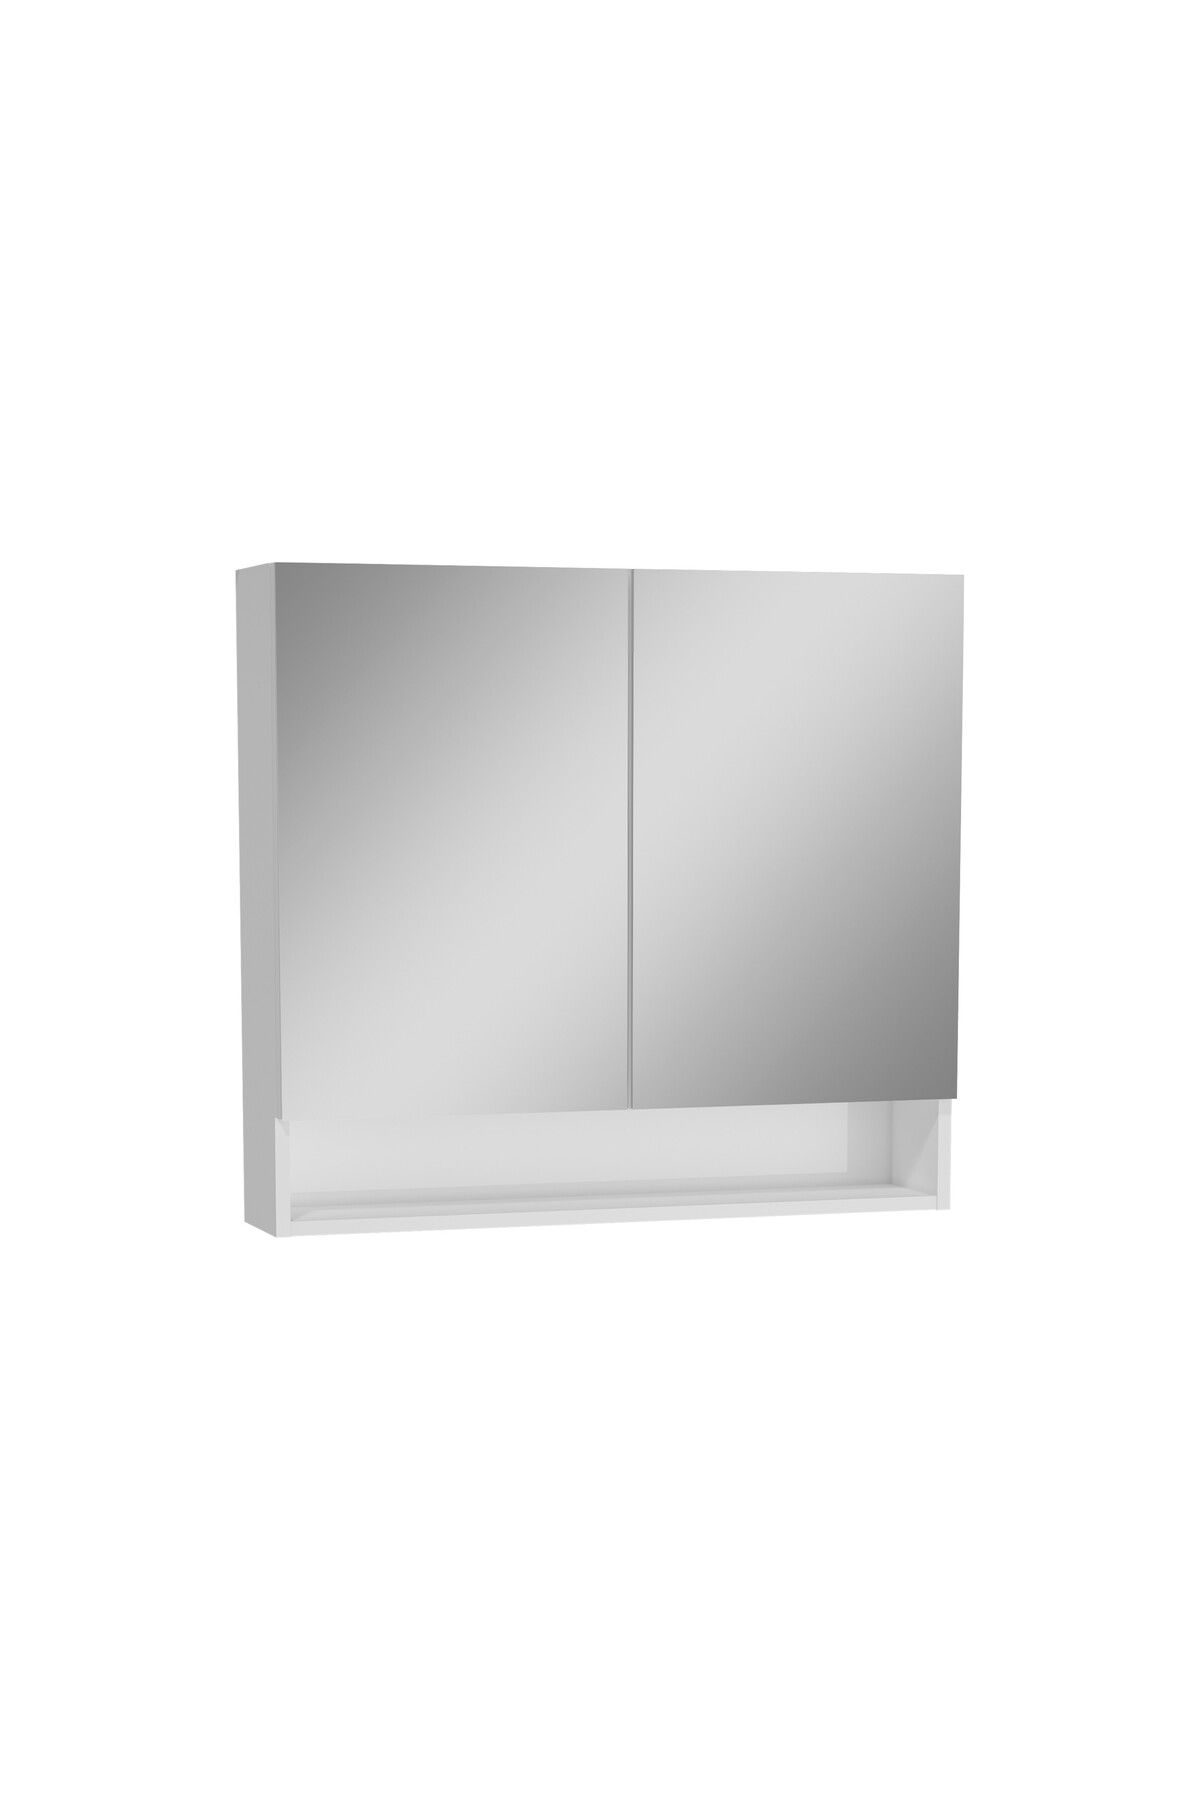 VitrA Ardea 66114 Dolaplı Ayna, 80 Cm, Parlak Beyaz